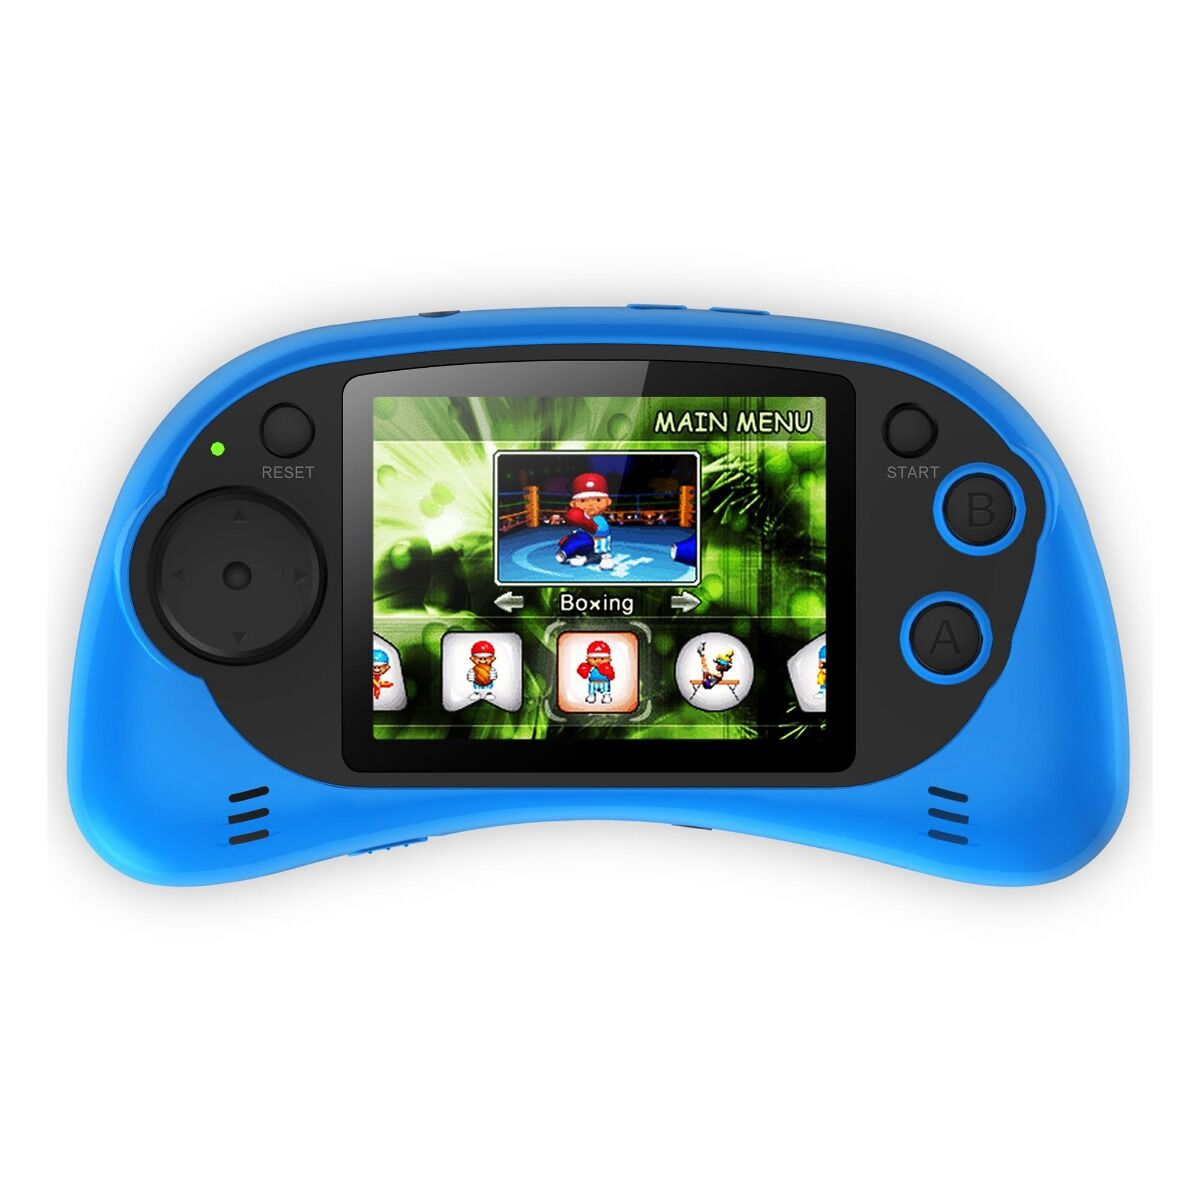 Consola jocuri portabila Serioux, ecran 2.7, 200 jocuri incluse, Albastru